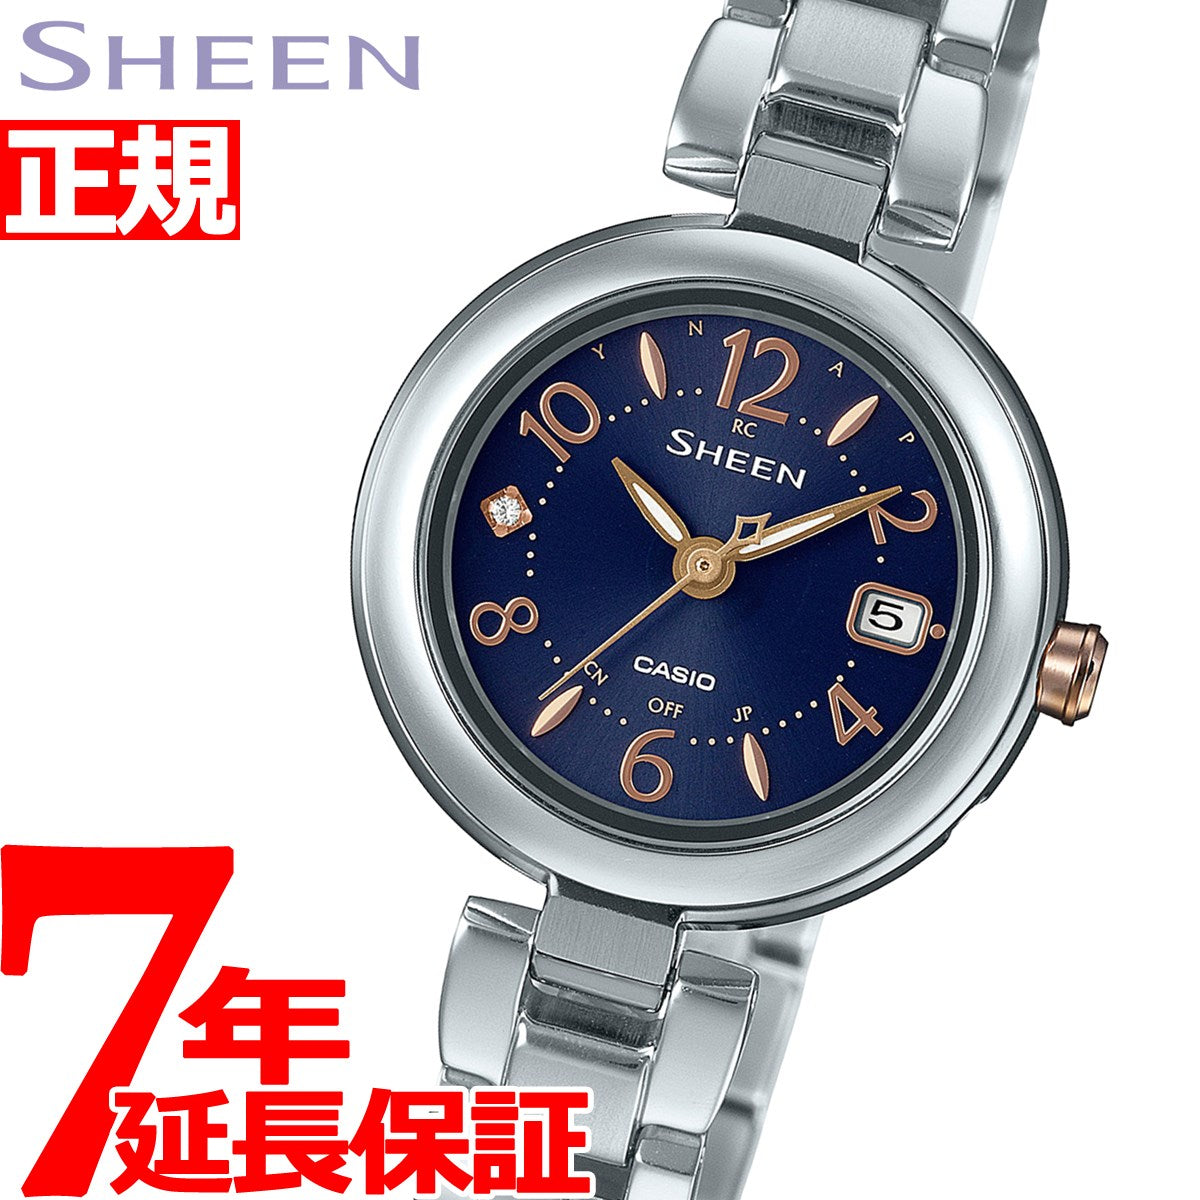 カシオ シーン 腕時計 レディース 電波ソーラー SHW-7100TD-2AJF